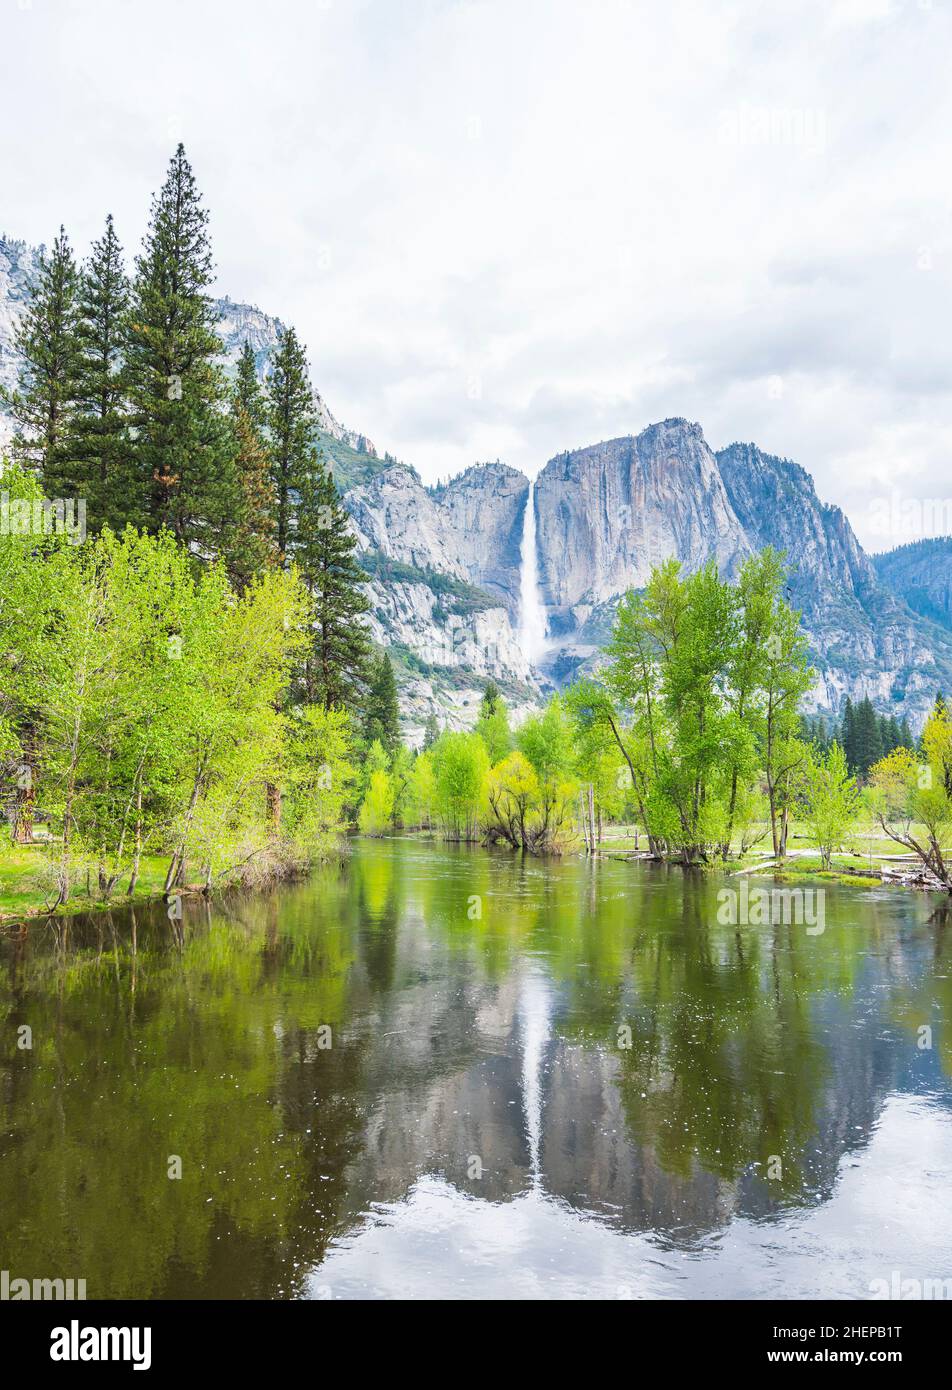 Vue sur El Capital et la falaise de la cathédrale avec le premier plan de la rivière, parc national de Yosemite, Californie, états-unis. Banque D'Images